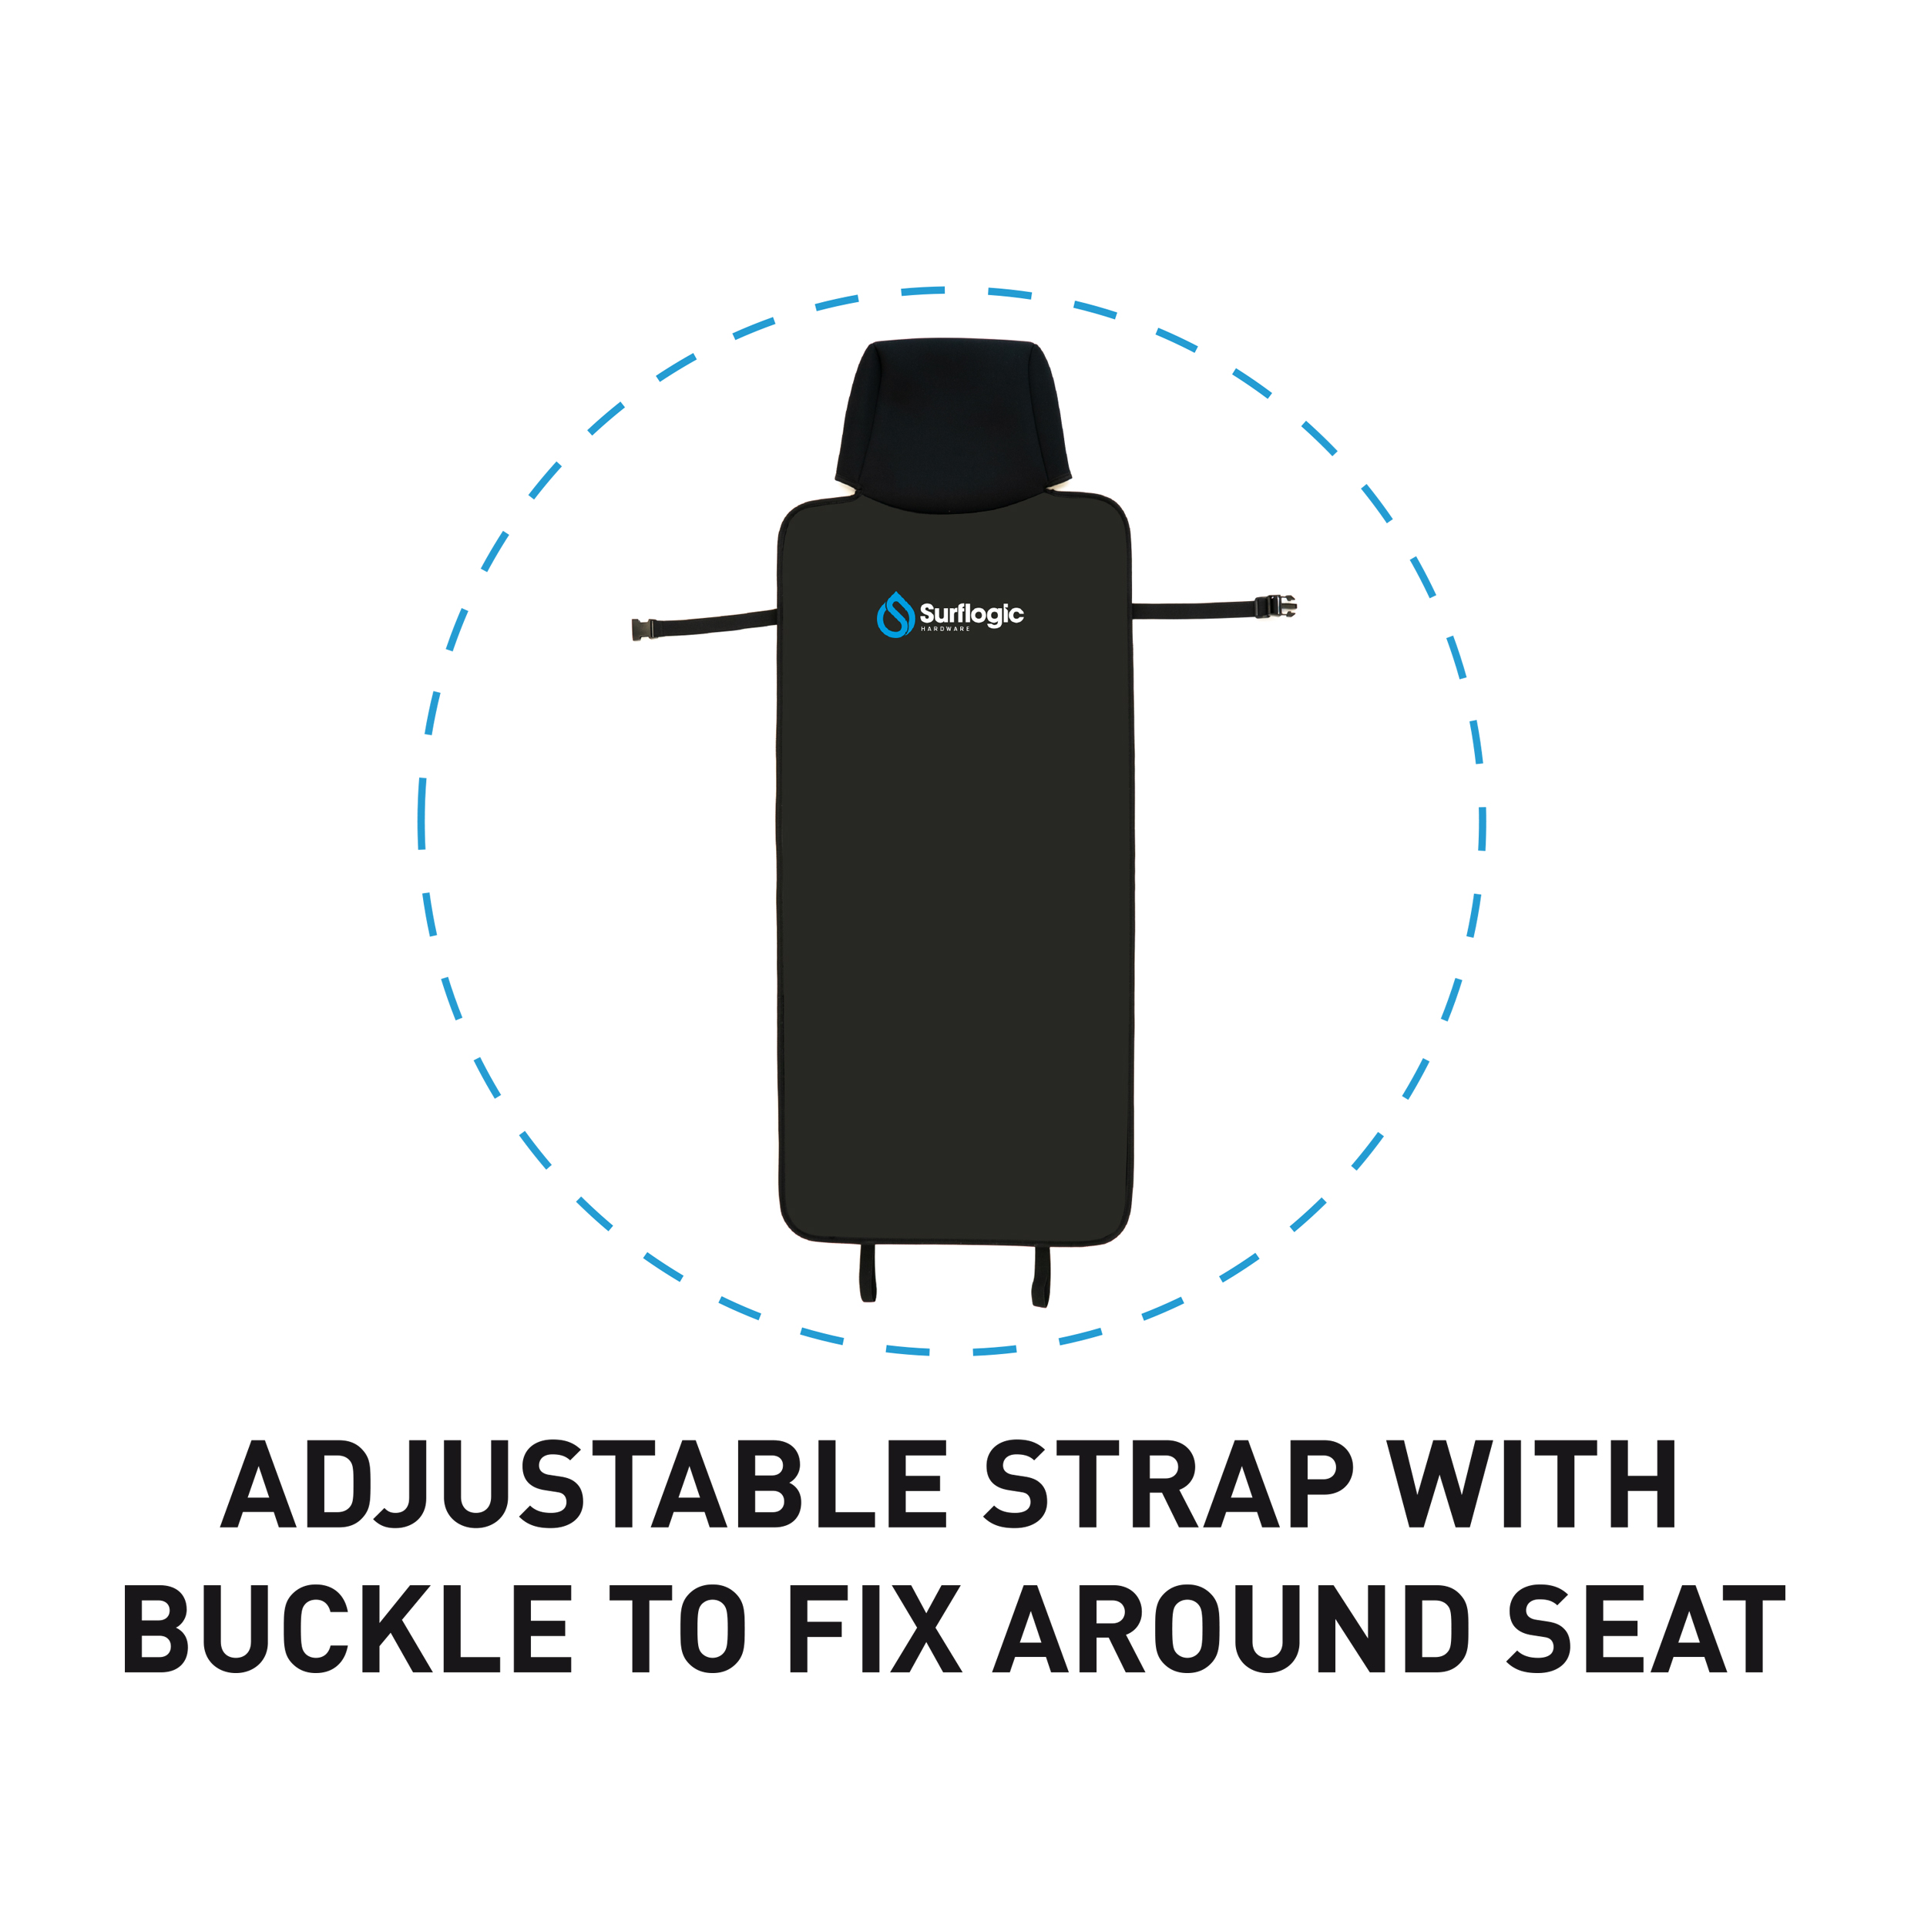 Housse de siège en néoprène pour voiture, protection de siège